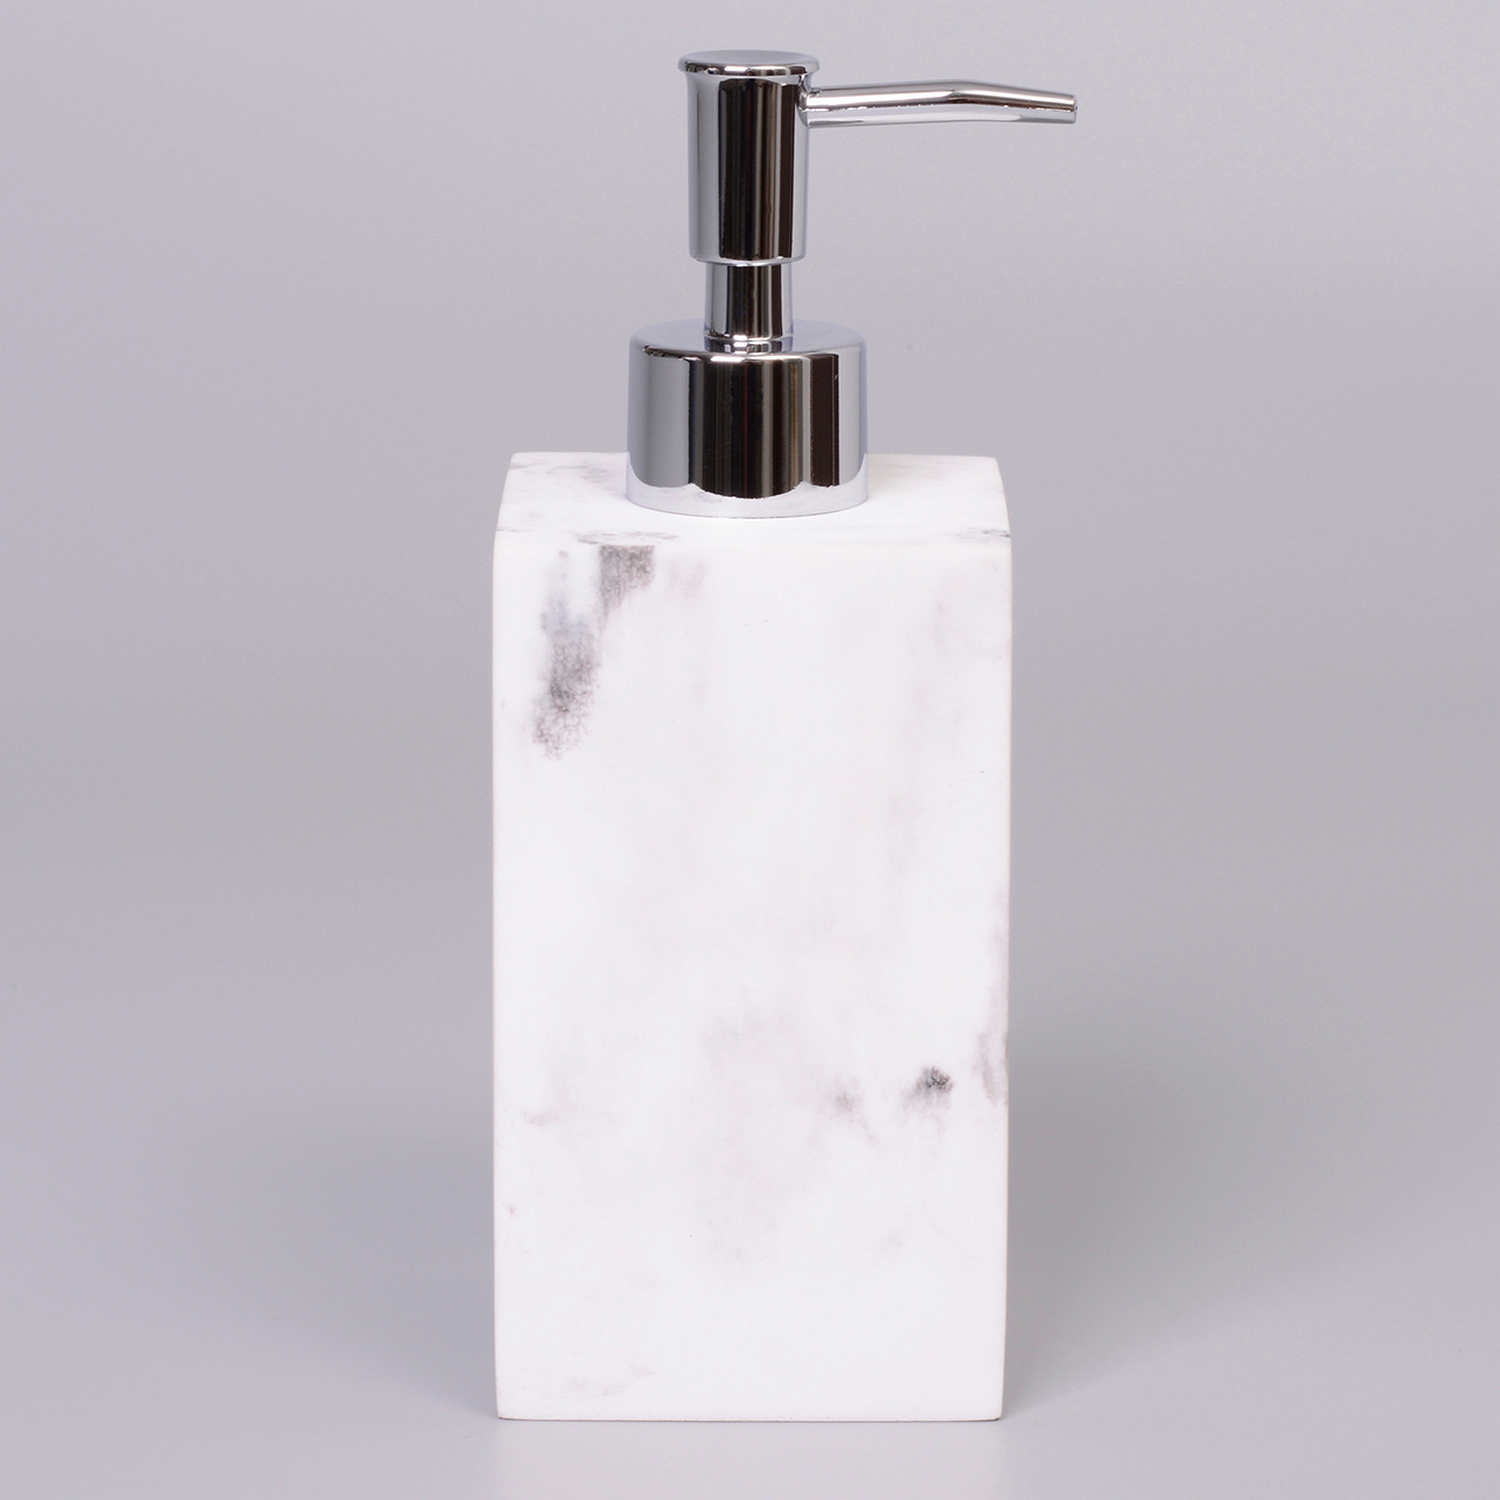 Дозатор WasserKRAFT Kammel K-9199 для жидкого мыла, настольный, цвет белый / серый - фото 1